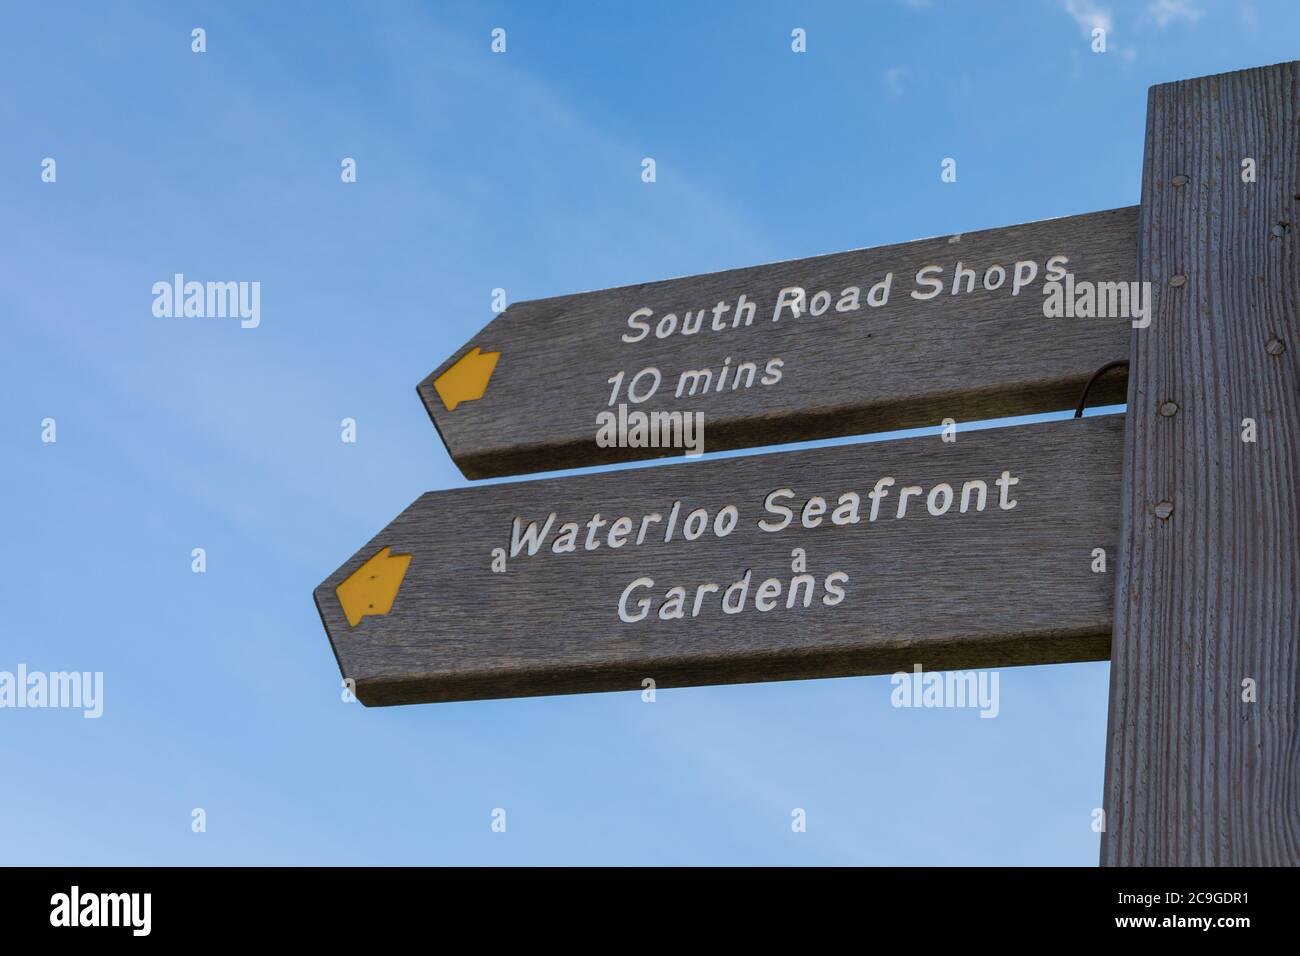 Una señal de madera que indica dirección a South Road Shops y Waterloo Seafront Gardens - Waterloo, Liverpool, Merseyside, UK Foto de stock